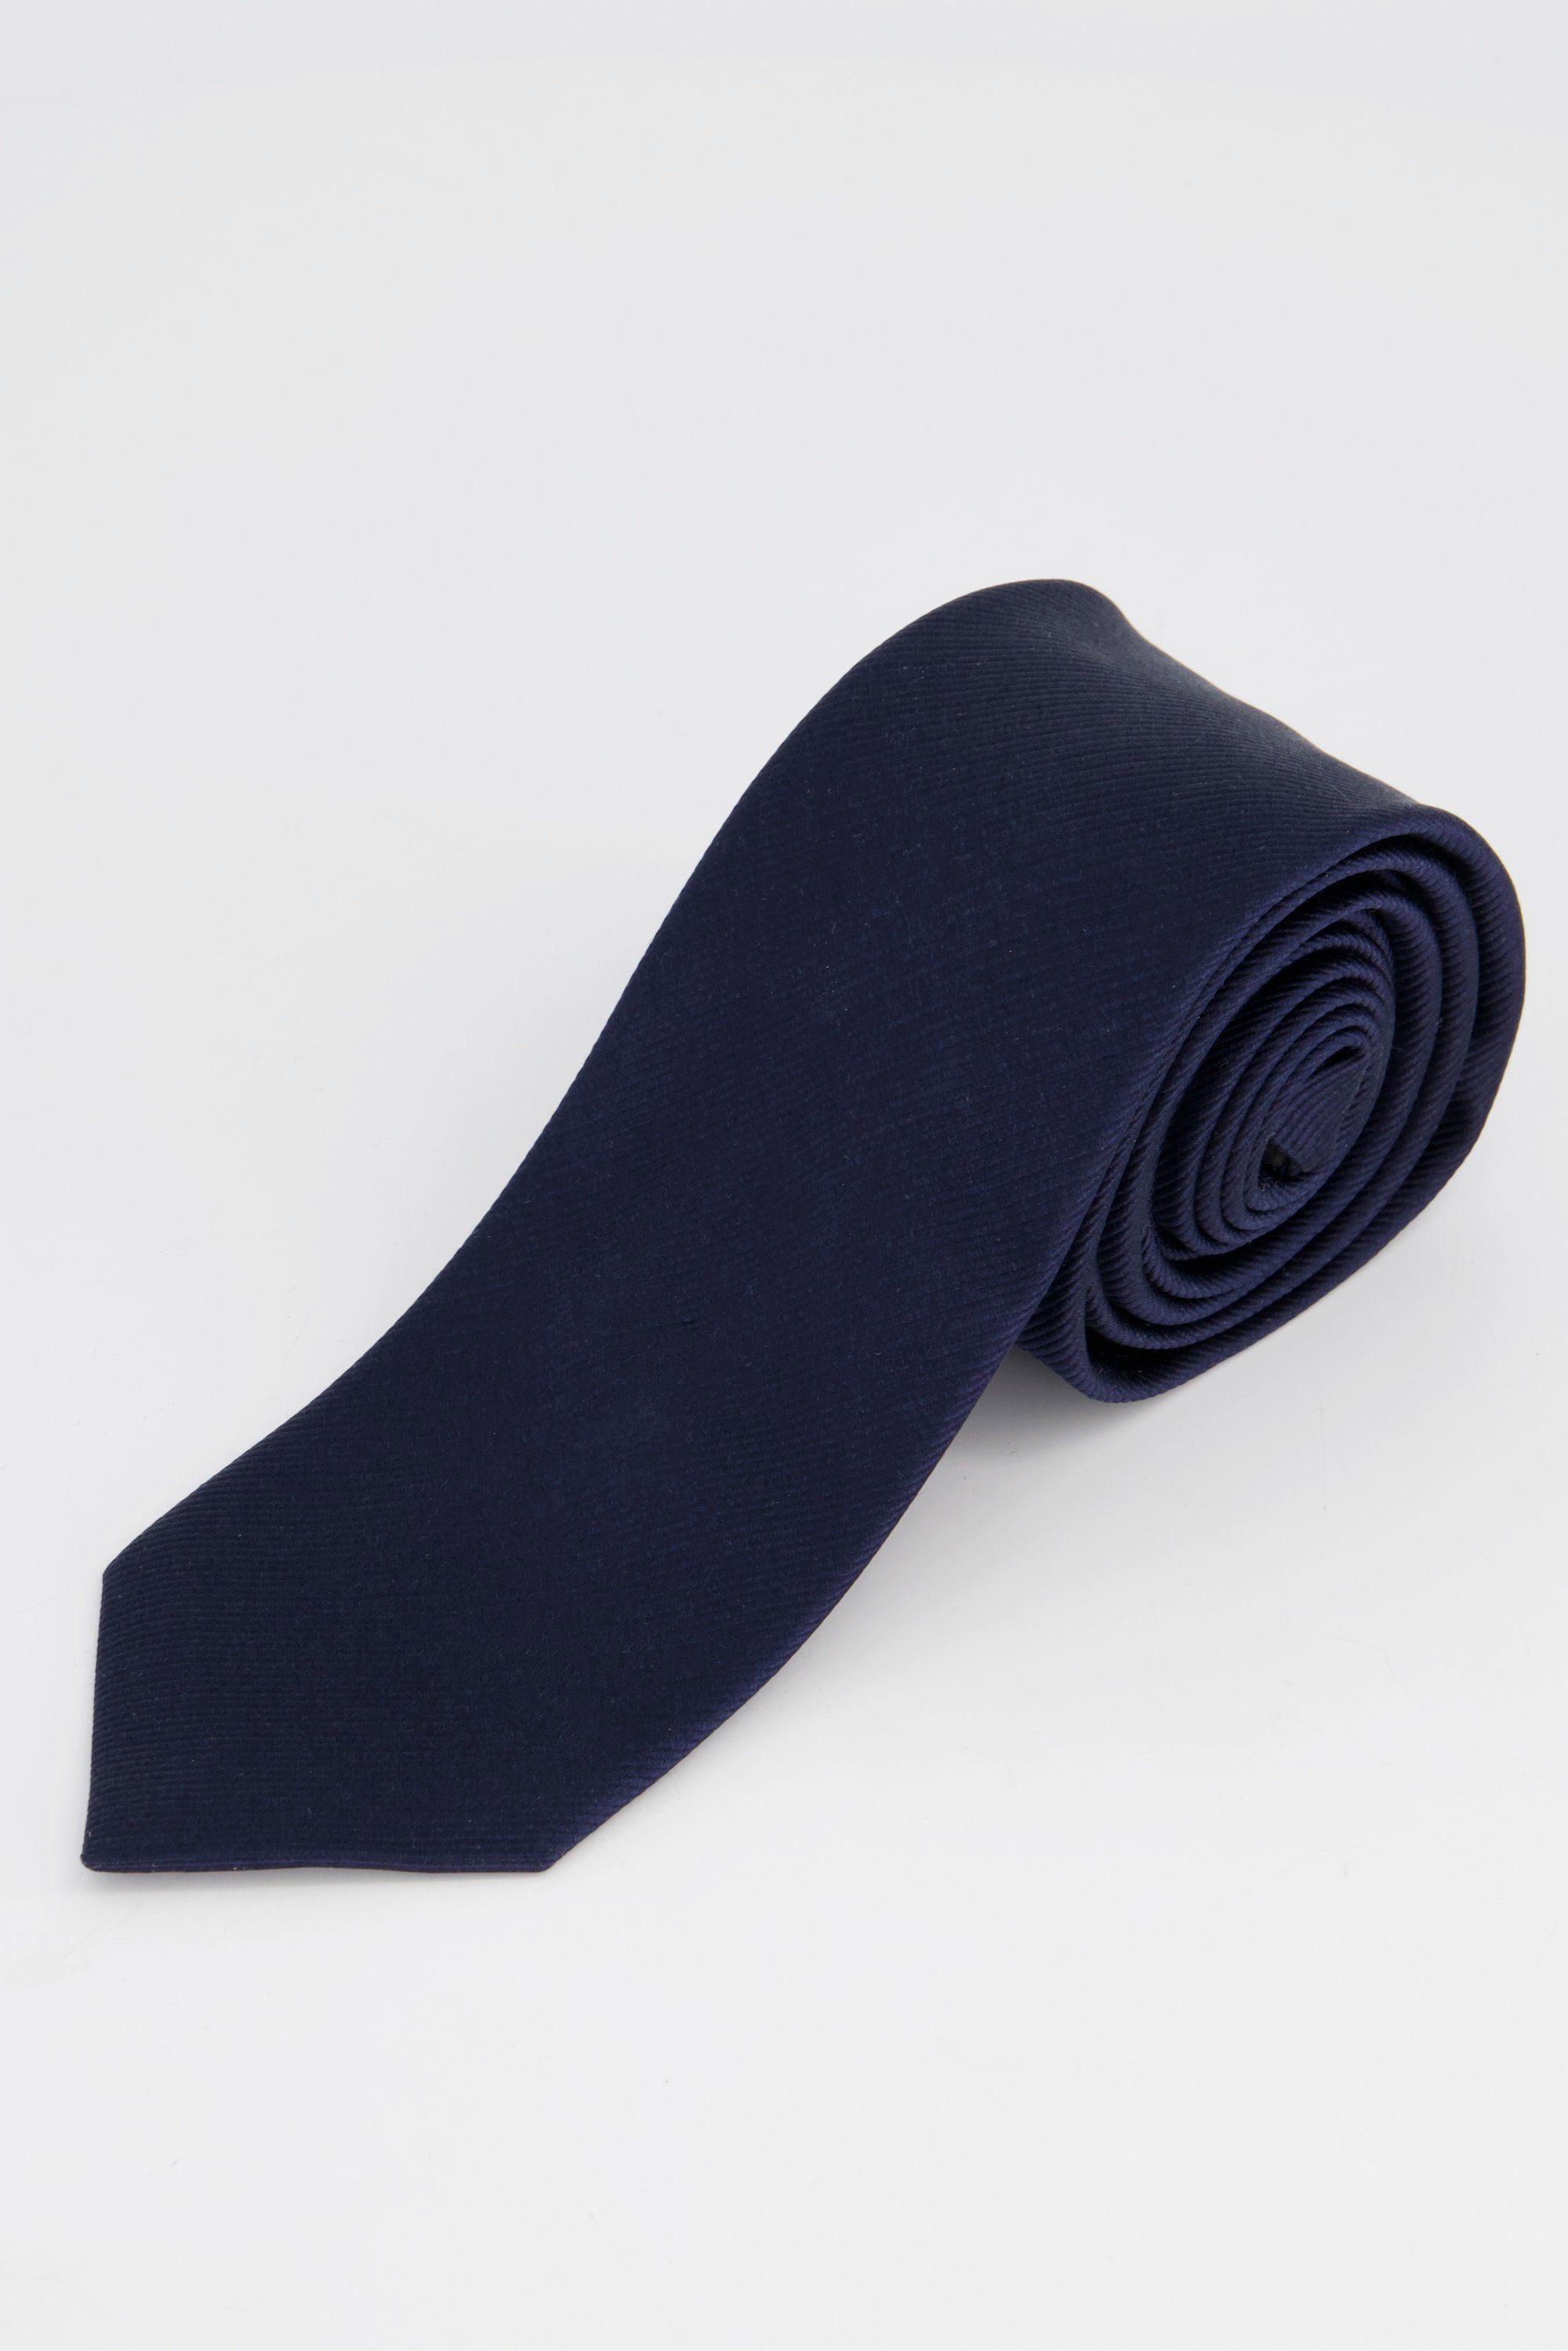 JP1880 Krawatte Seiden-Krawatte dunkel marine Streifen breit Extralänge cm 75